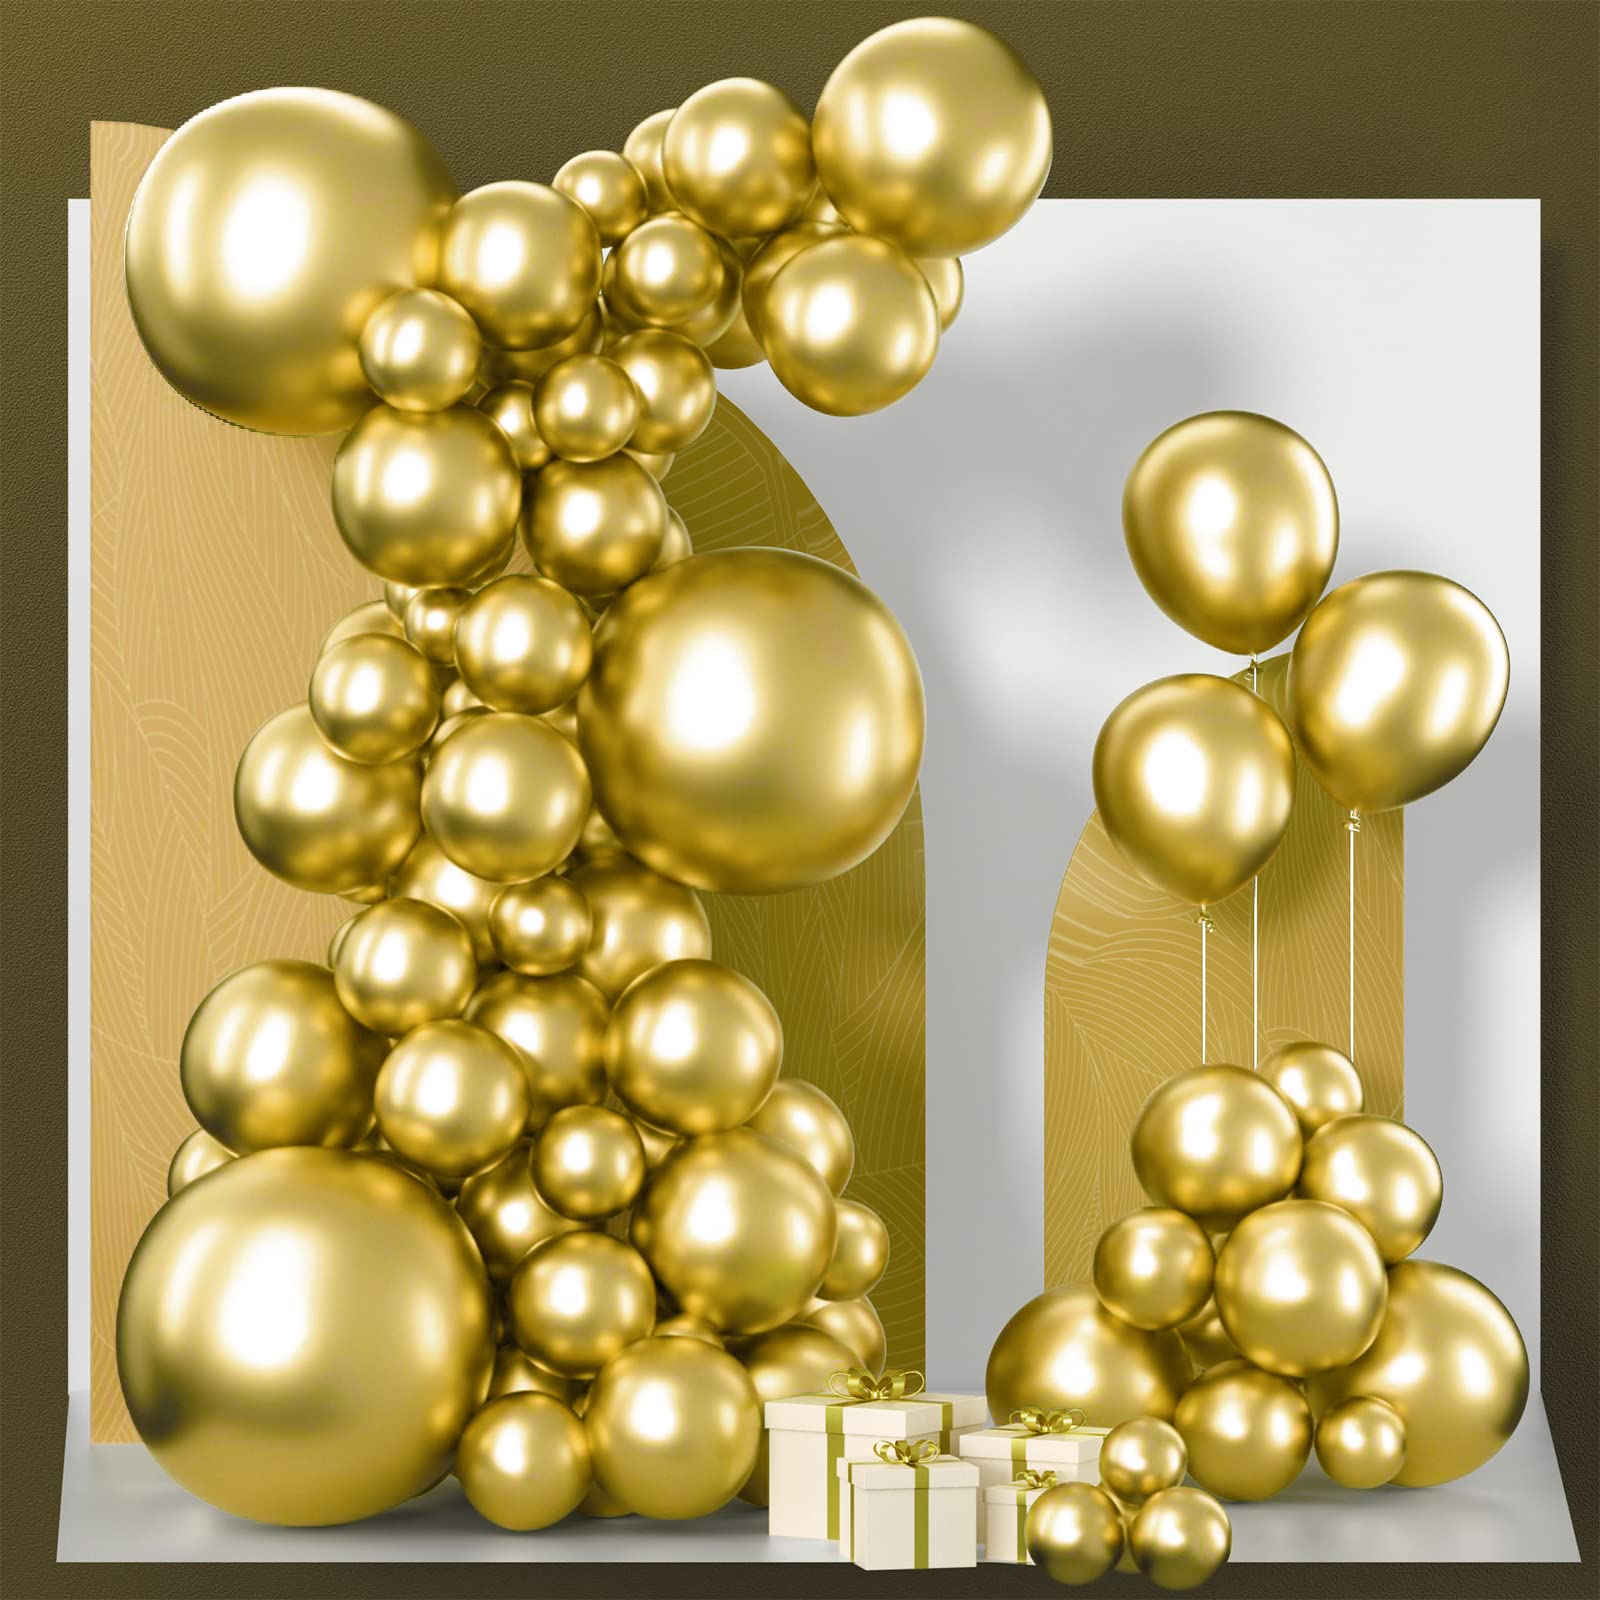 Mua PartyWoo Metallic Gold Balloons, 85 pcs Gold Balloons ...